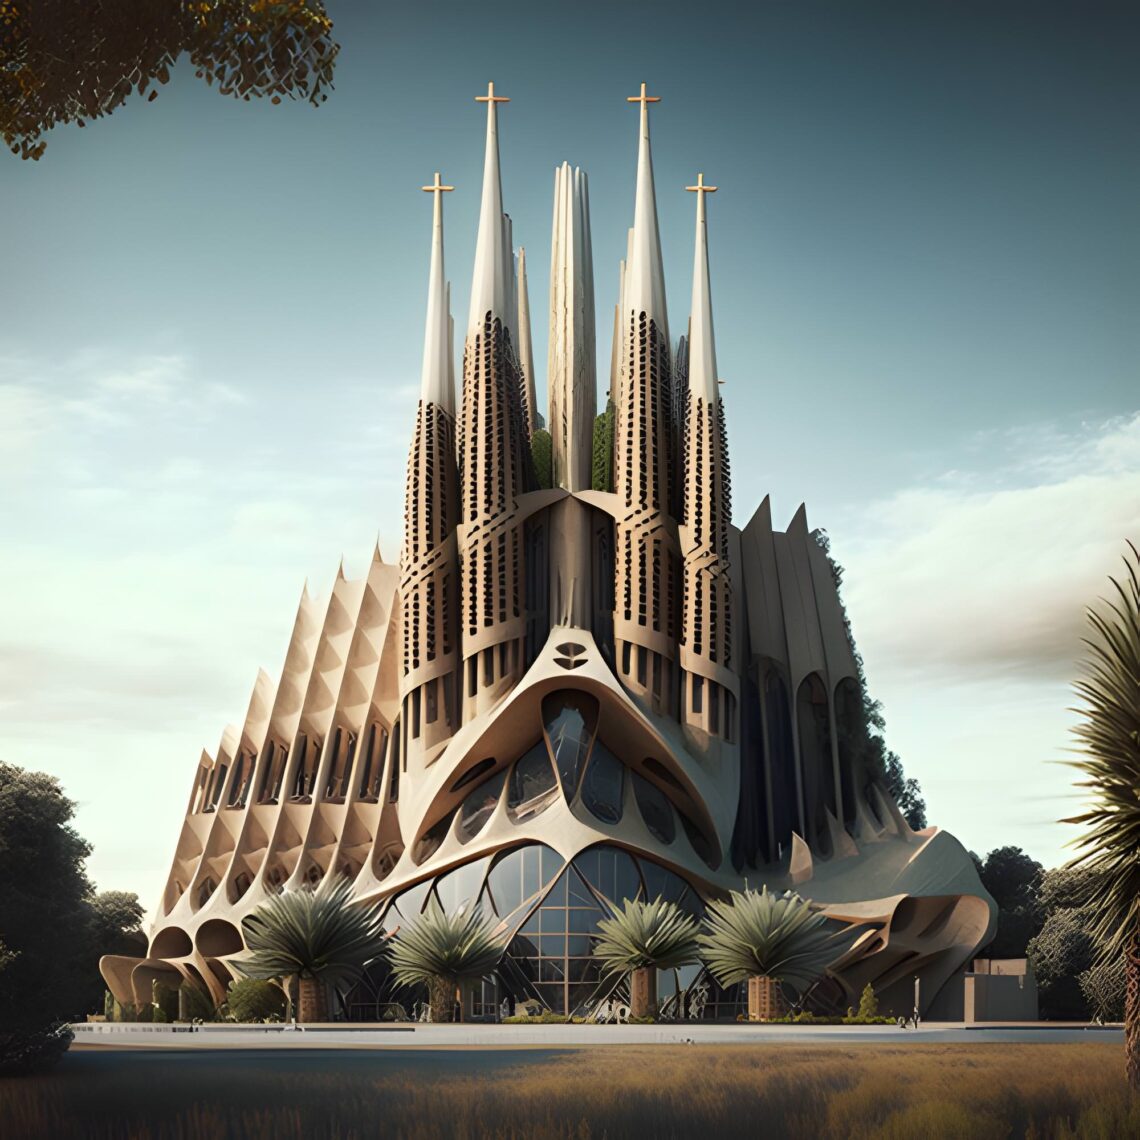 La Sagrada Familia, Redesigned in Contemporary Style - Spain